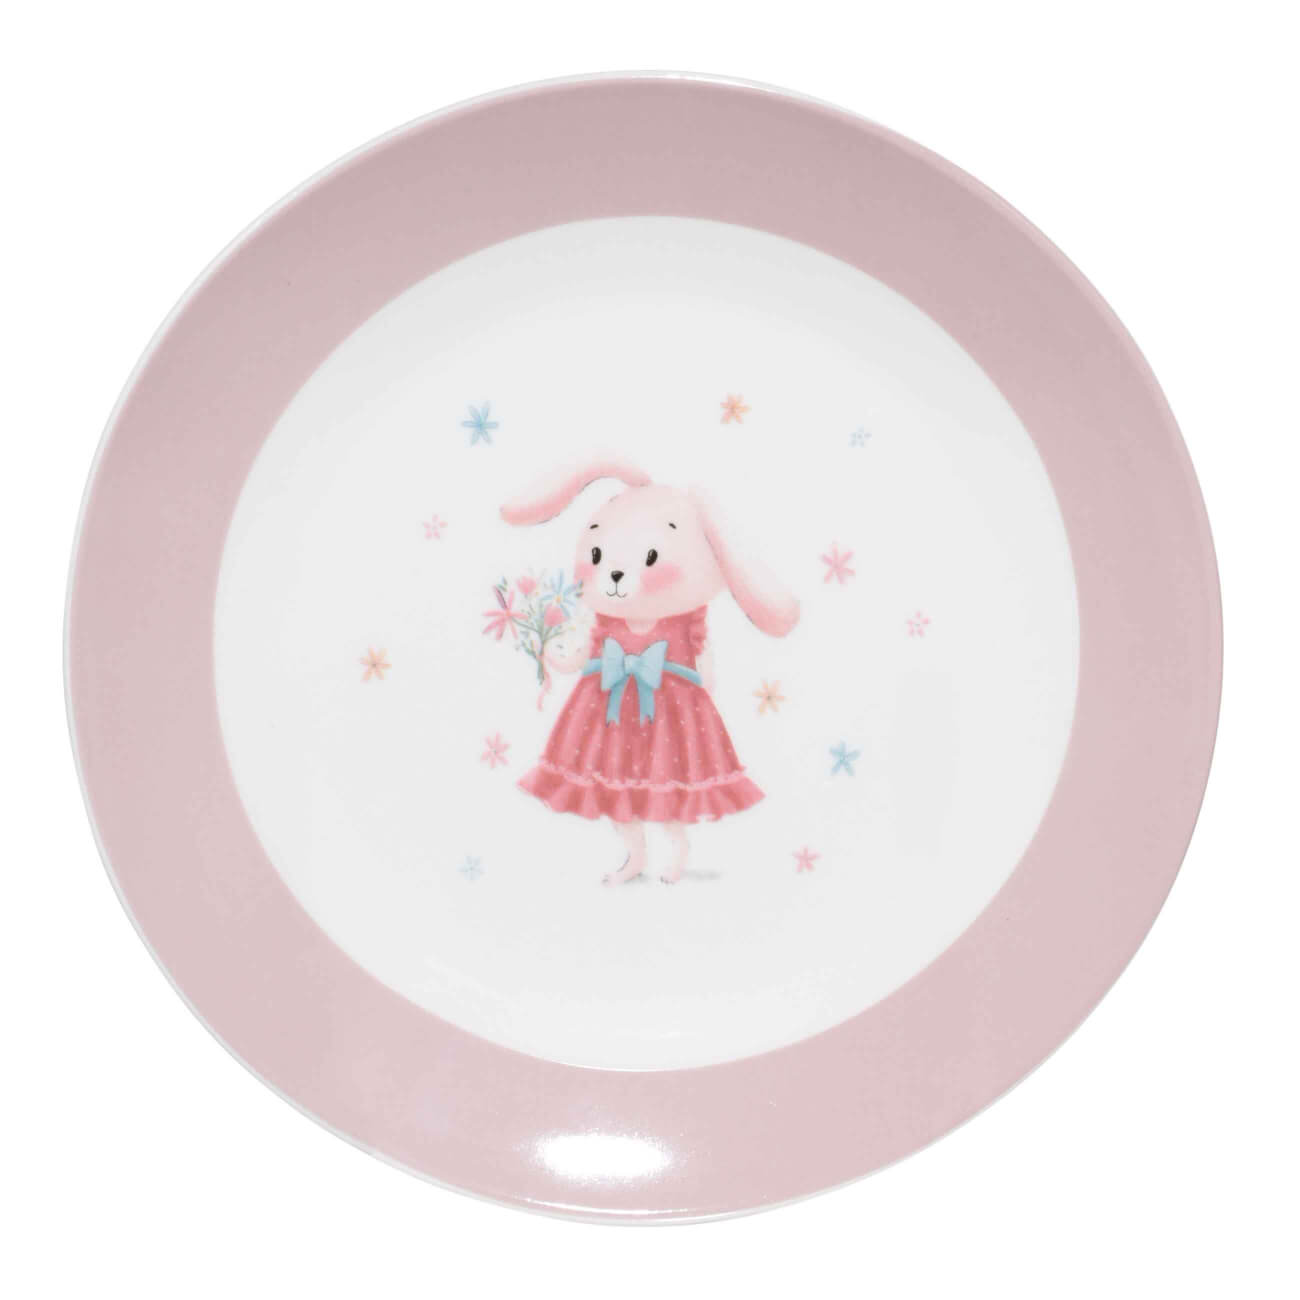 Тарелка закусочная, детская, 19 см, фарфор N, бело-розовая, Крольчиха с цветами, Ideas life изображение № 1